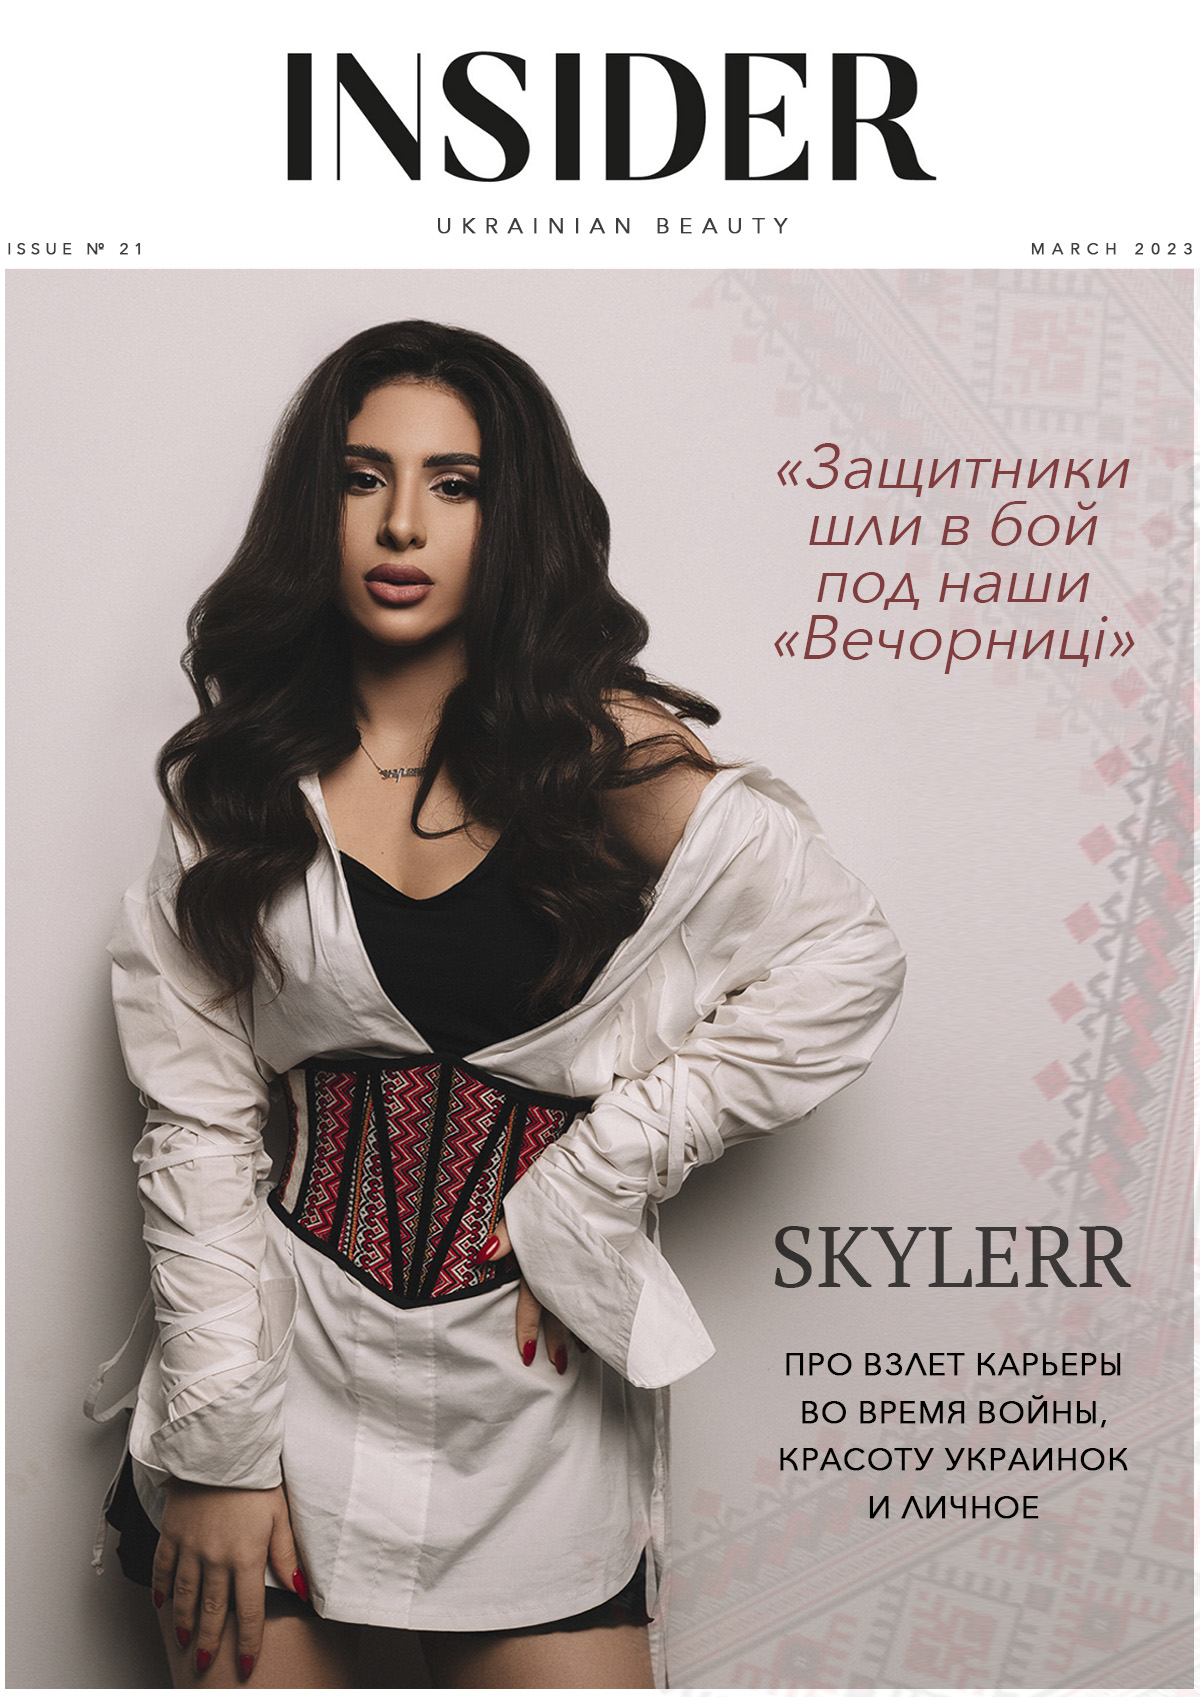 «Шли в бой под наши «Вечорниці»: певица SKYLERR про взлет карьеры, красоту украинок и личное